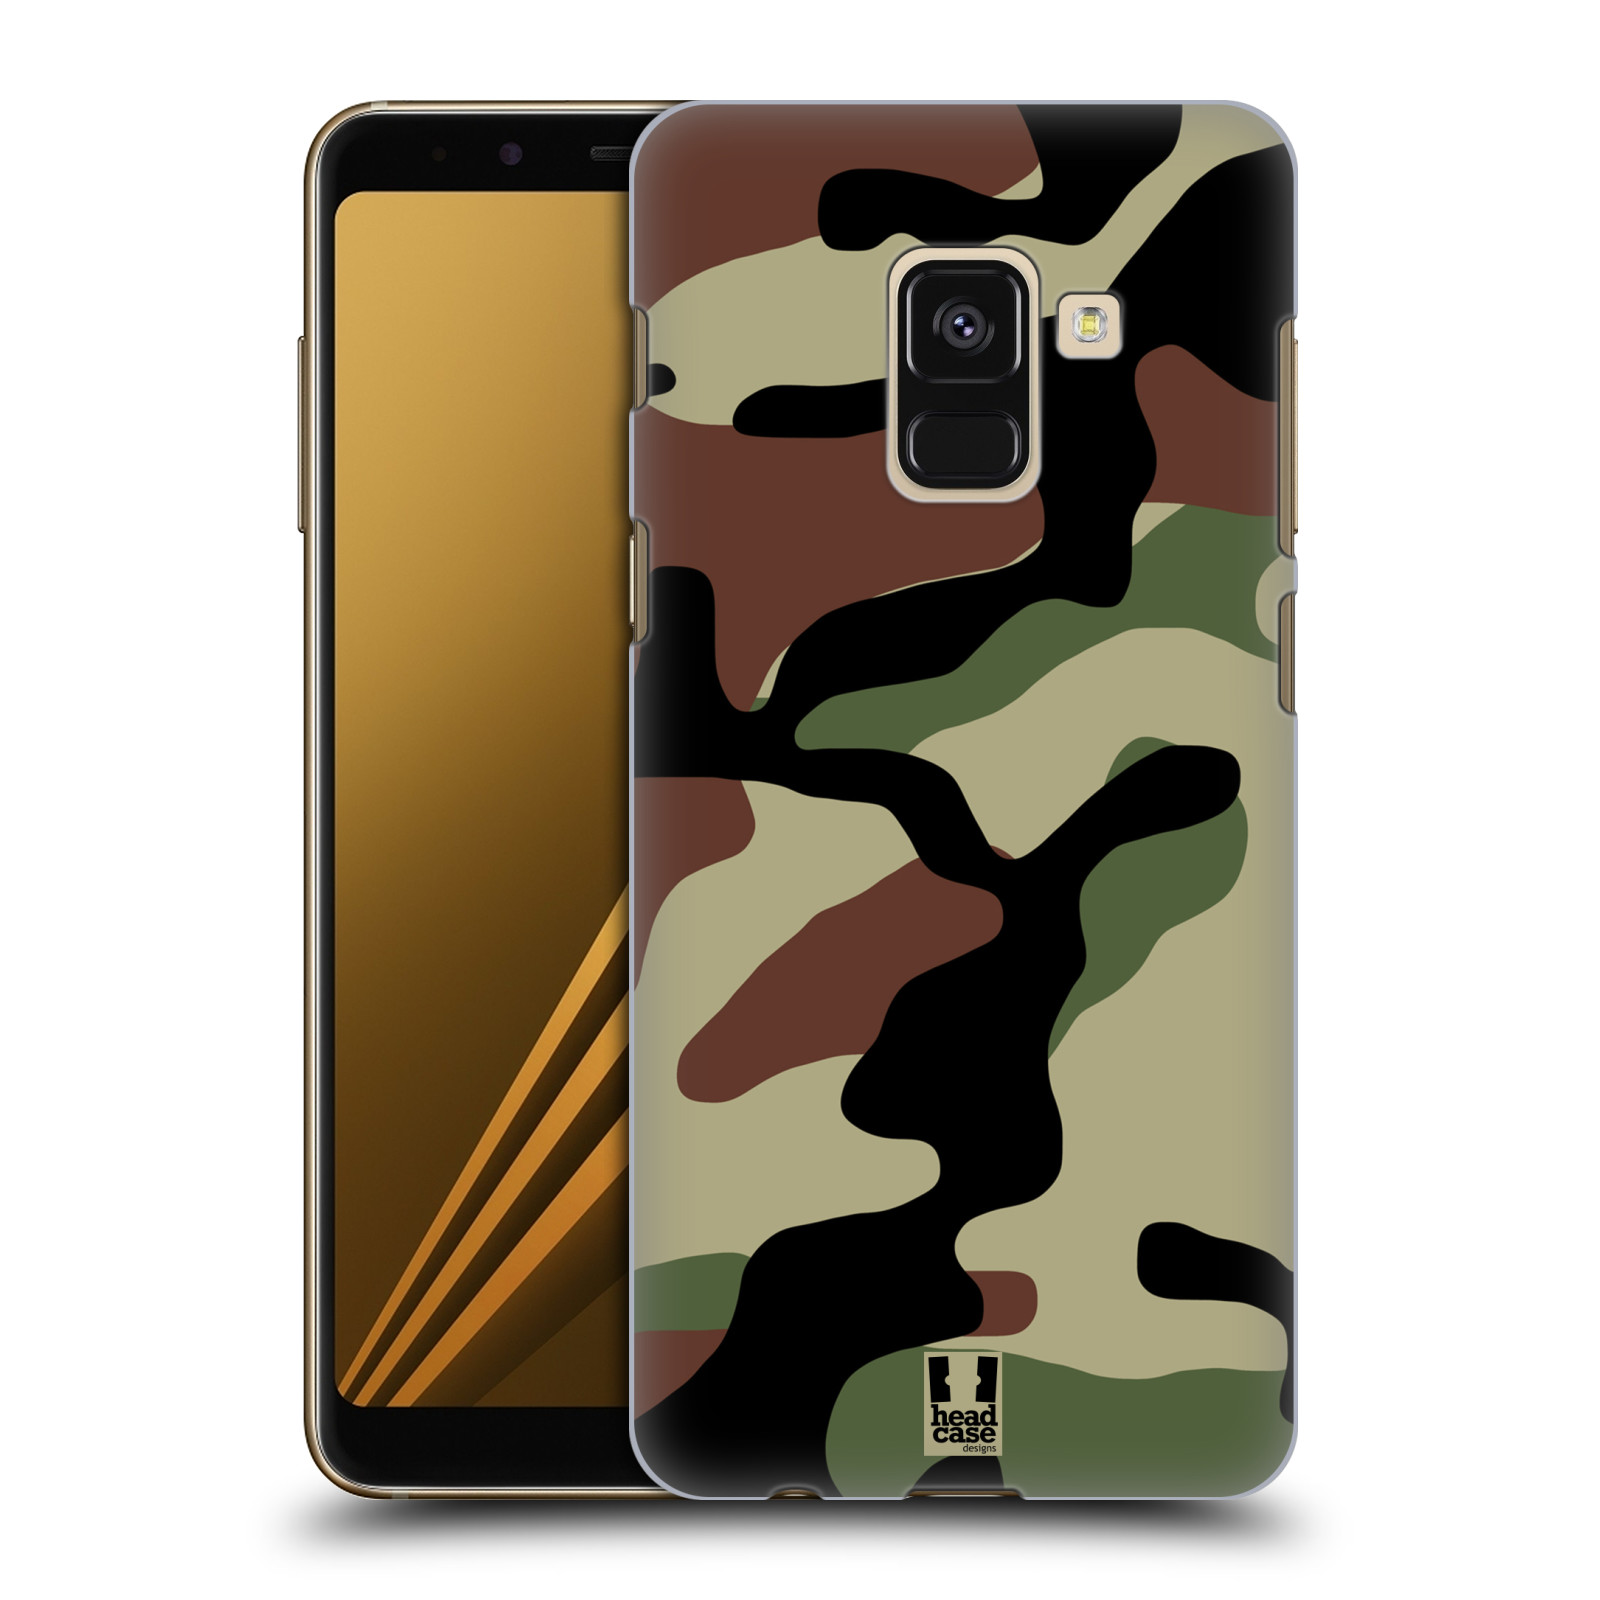 Pouzdro na mobil Samsung Galaxy A8+ 2018, A8 PLUS 2018 - HEAD CASE - Kamufláž les